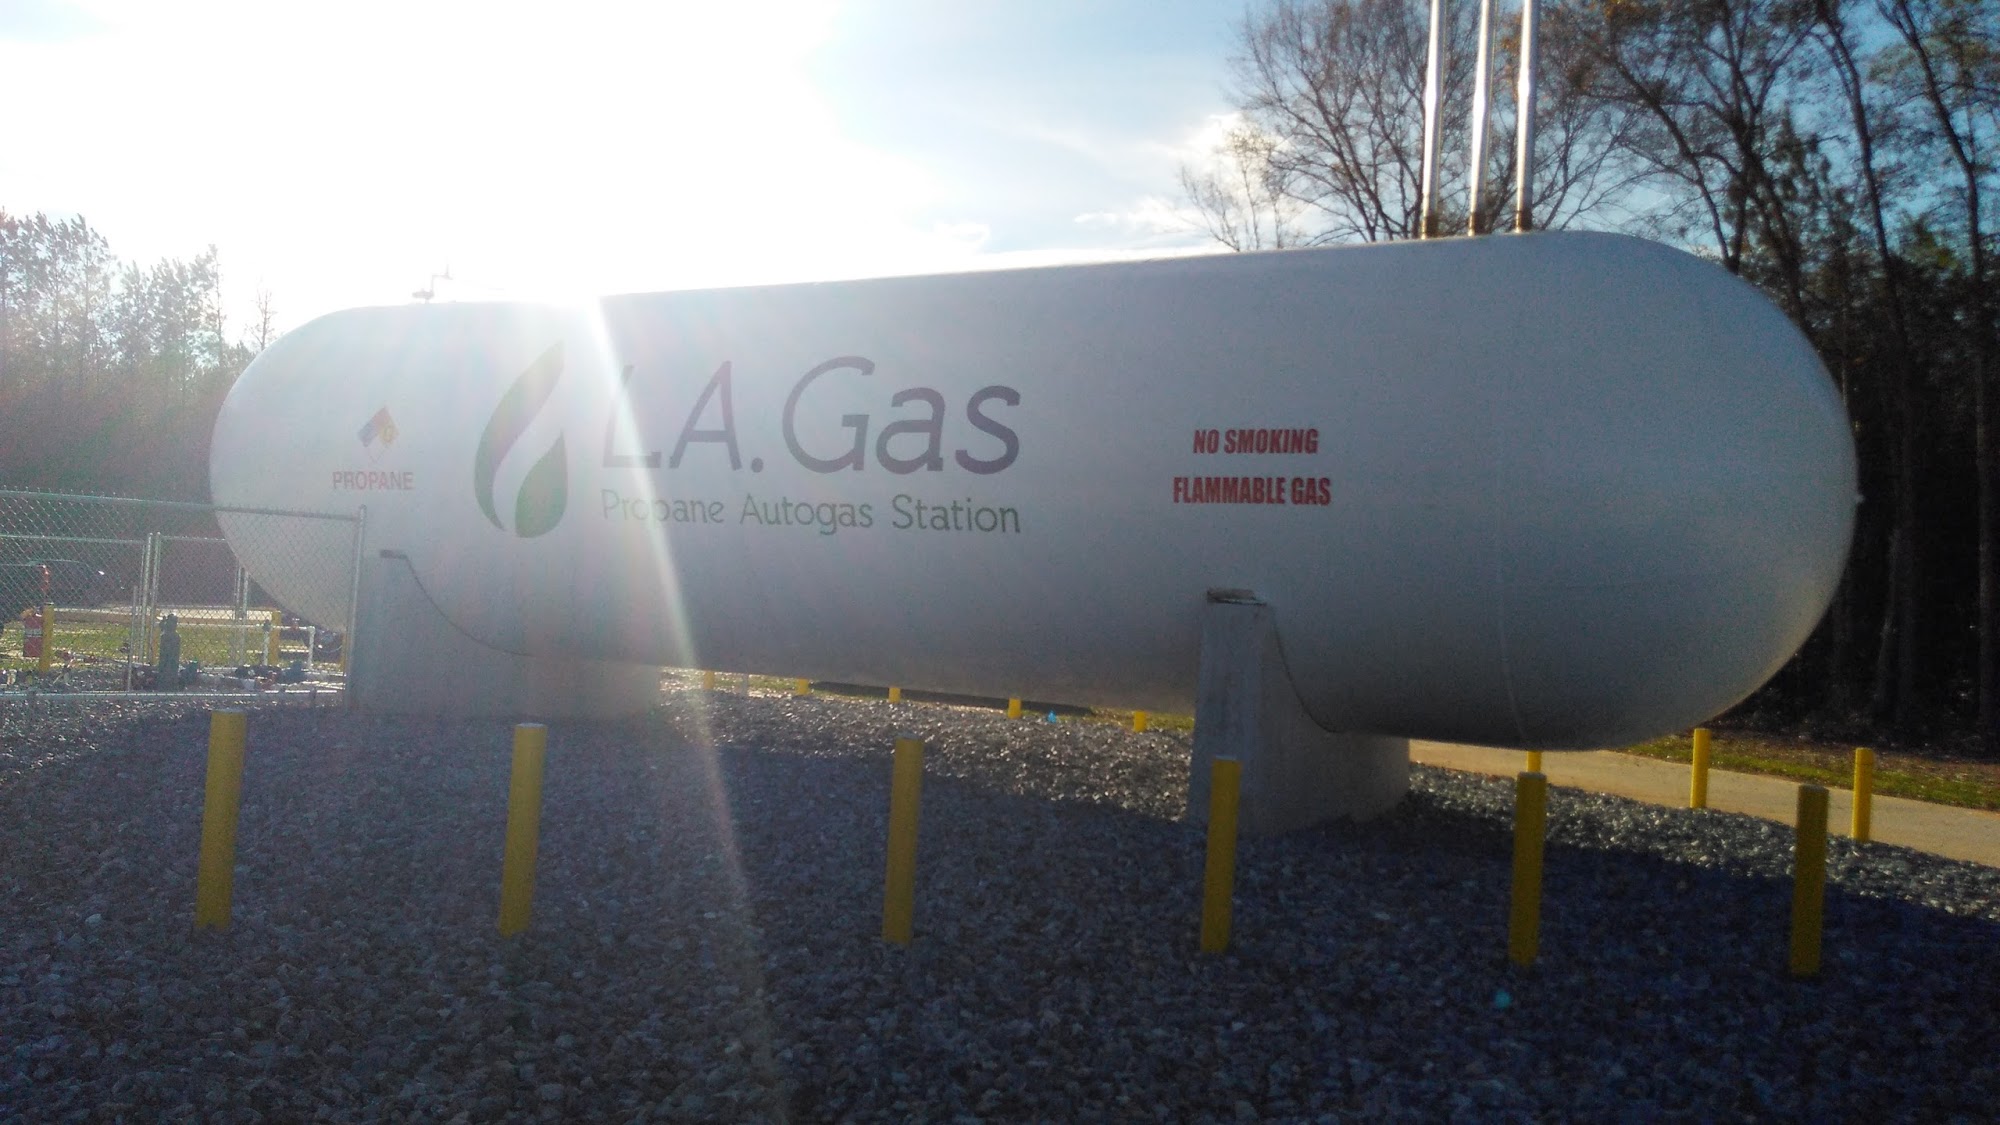 LA Gas Propane Station